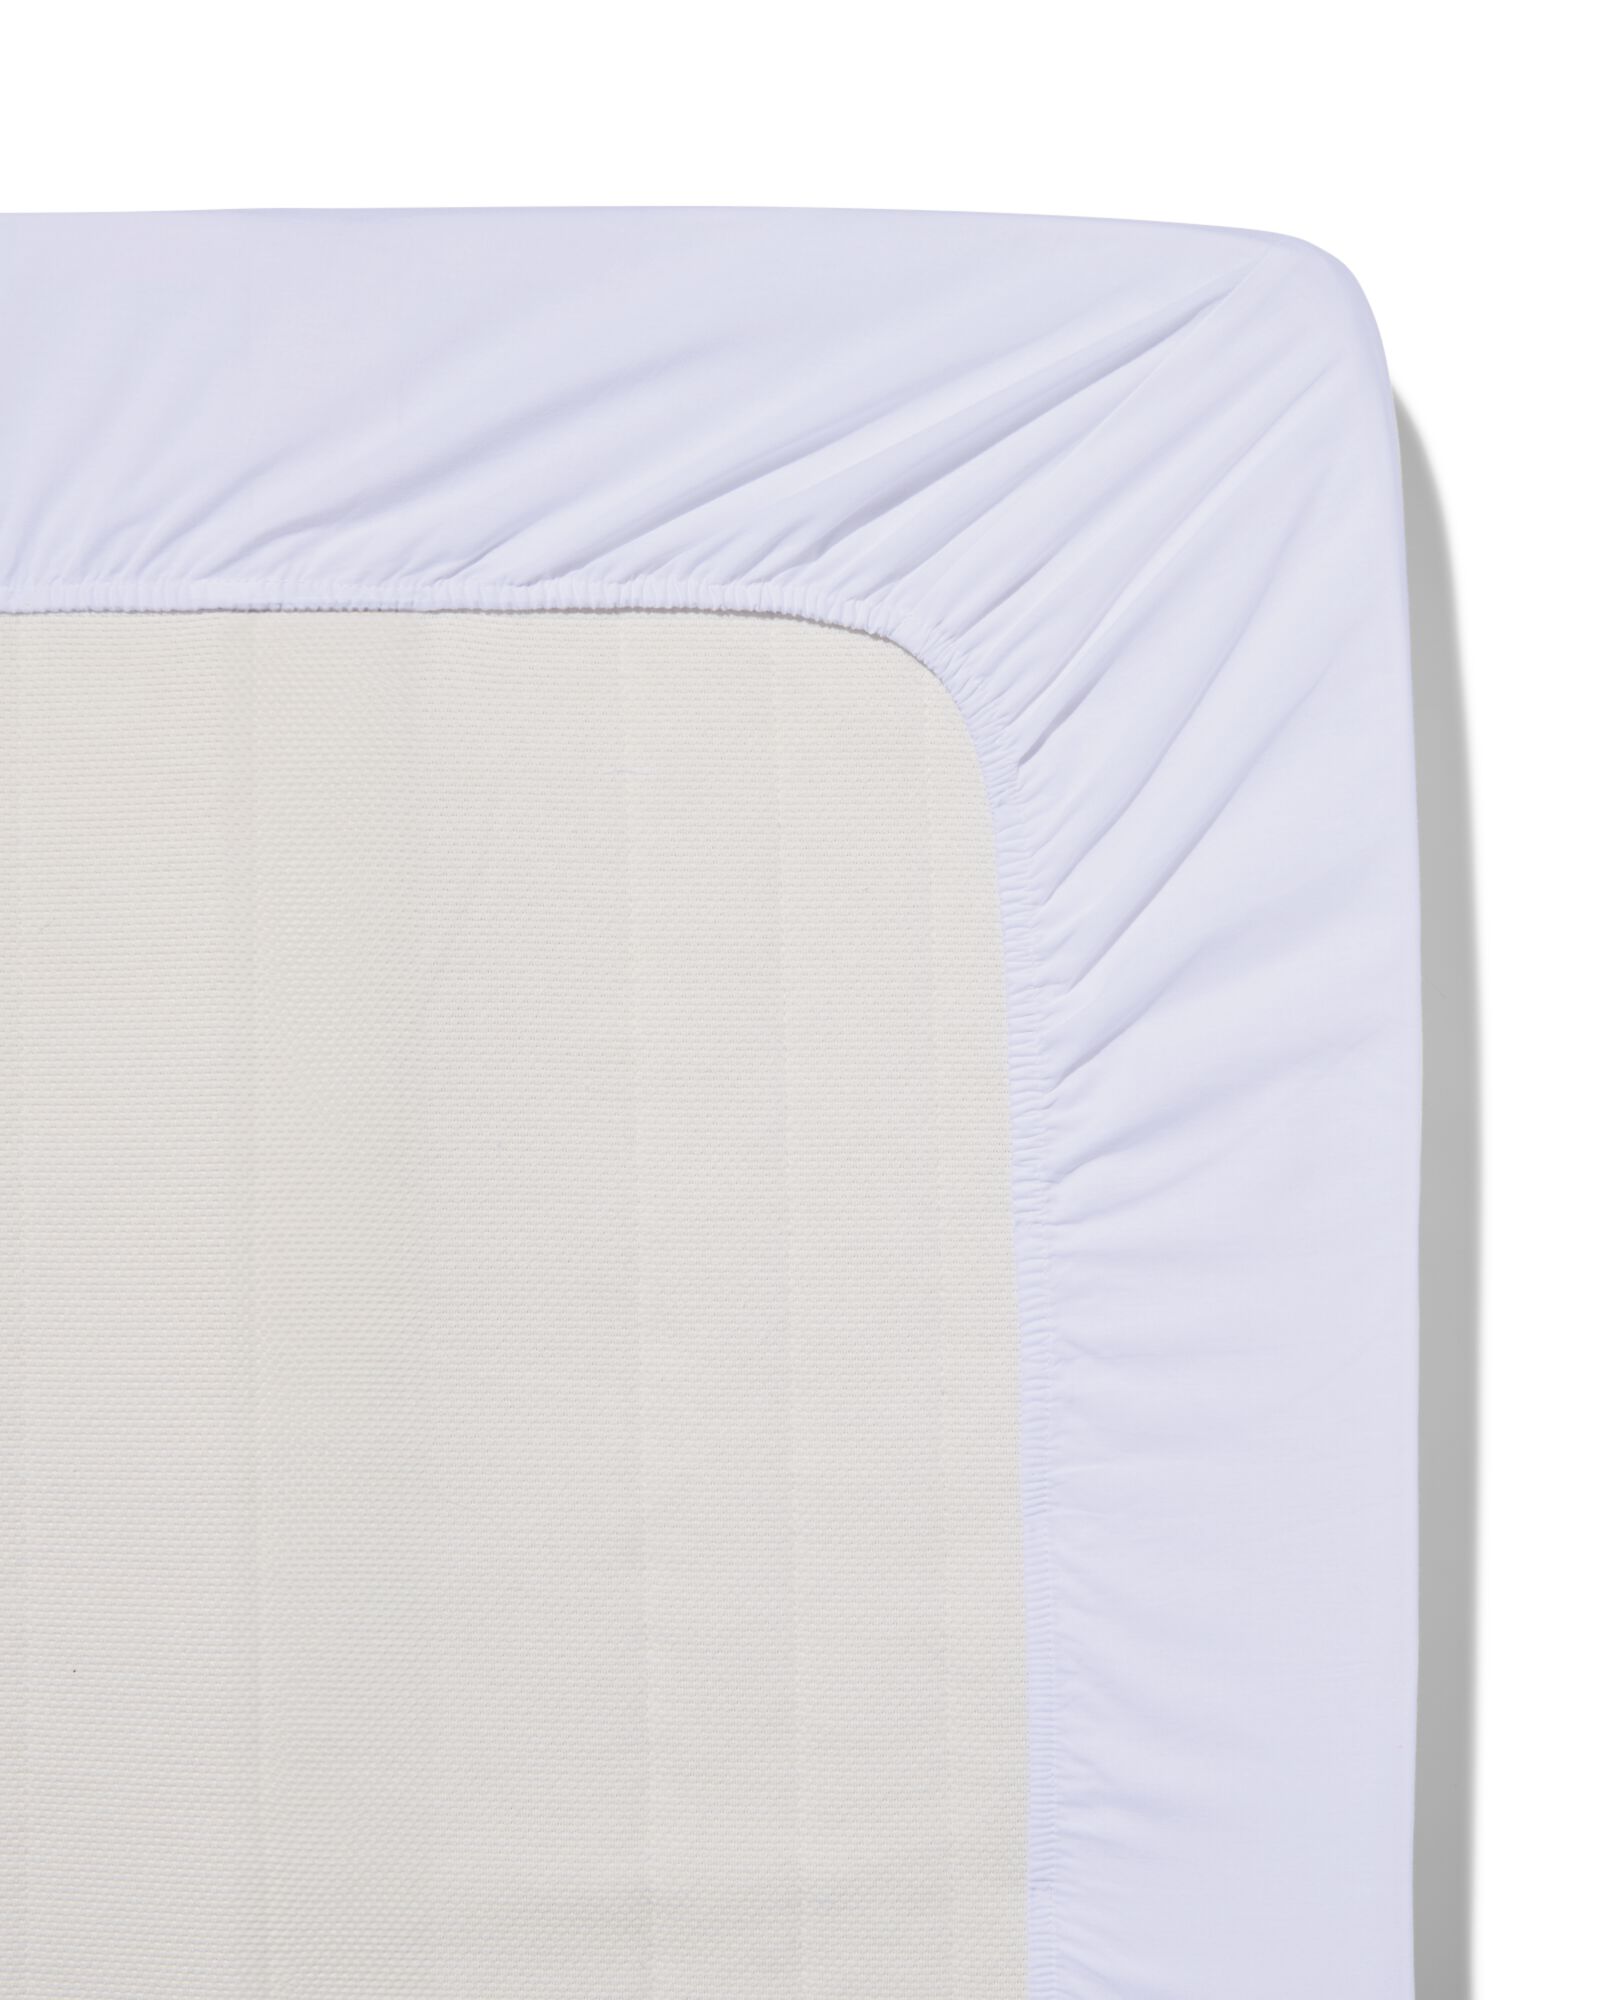 Spannbettlaken, Soft Cotton, 90 x 220 cm, weiß - 5190031 - HEMA